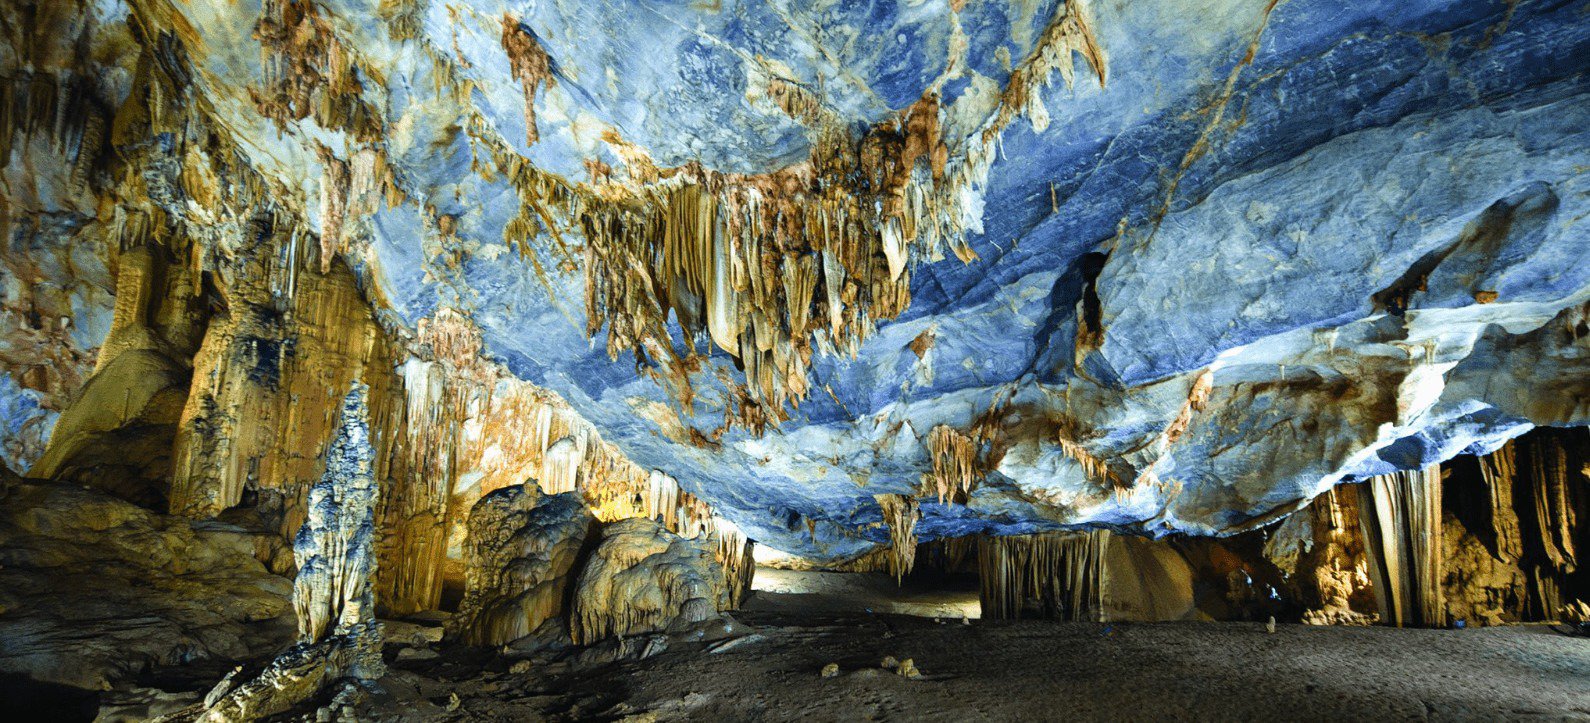 Paraidise Cave Tour